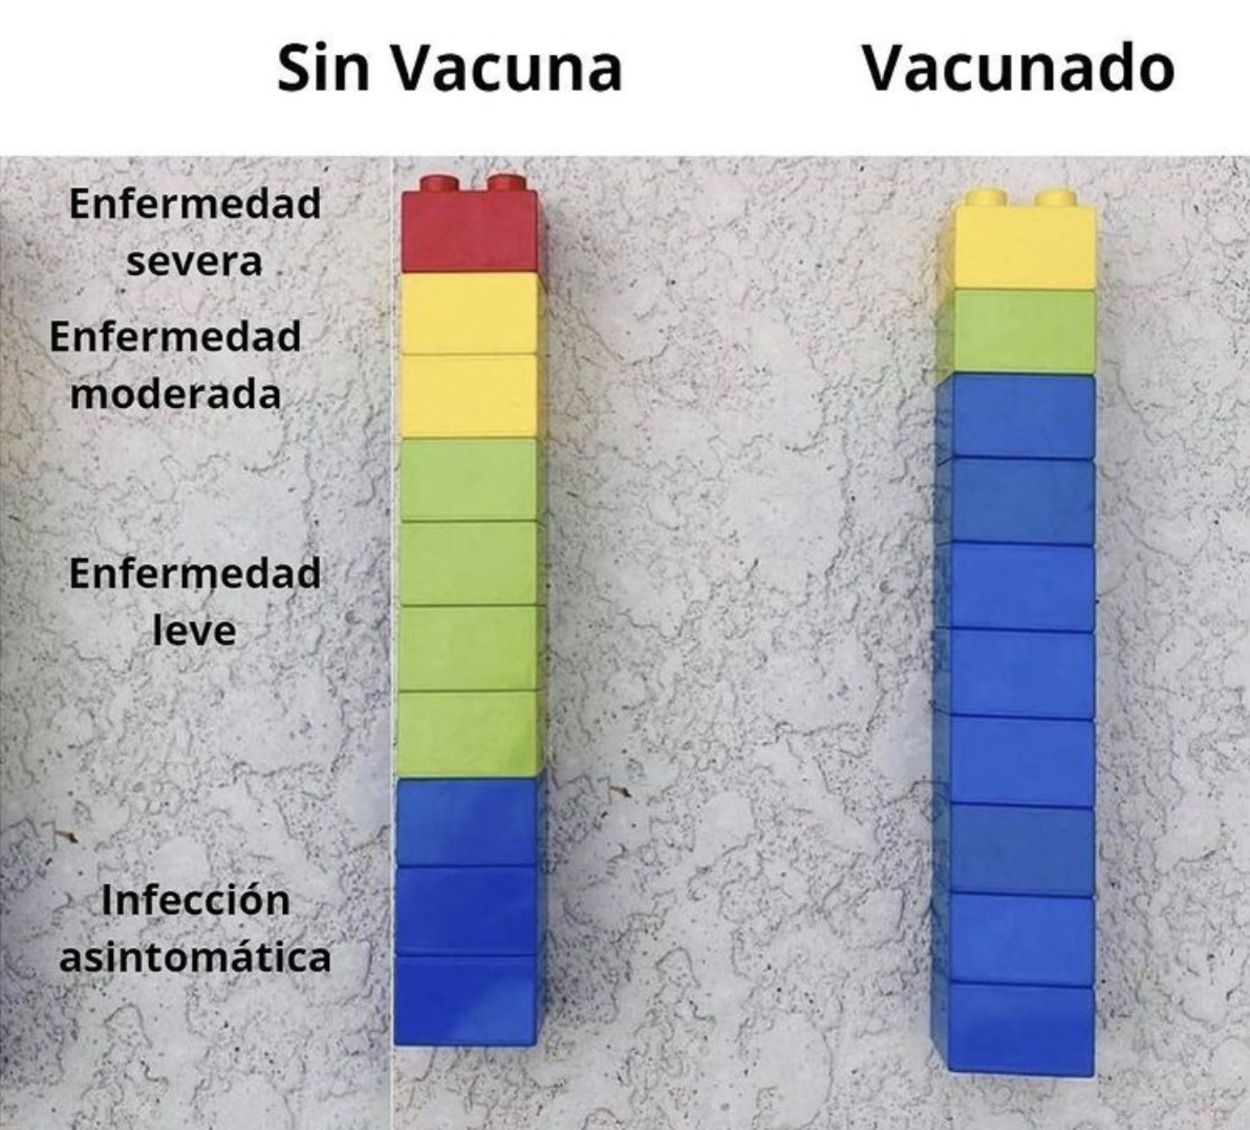 La eficacia de la vacuna explicada con fichas de Lego